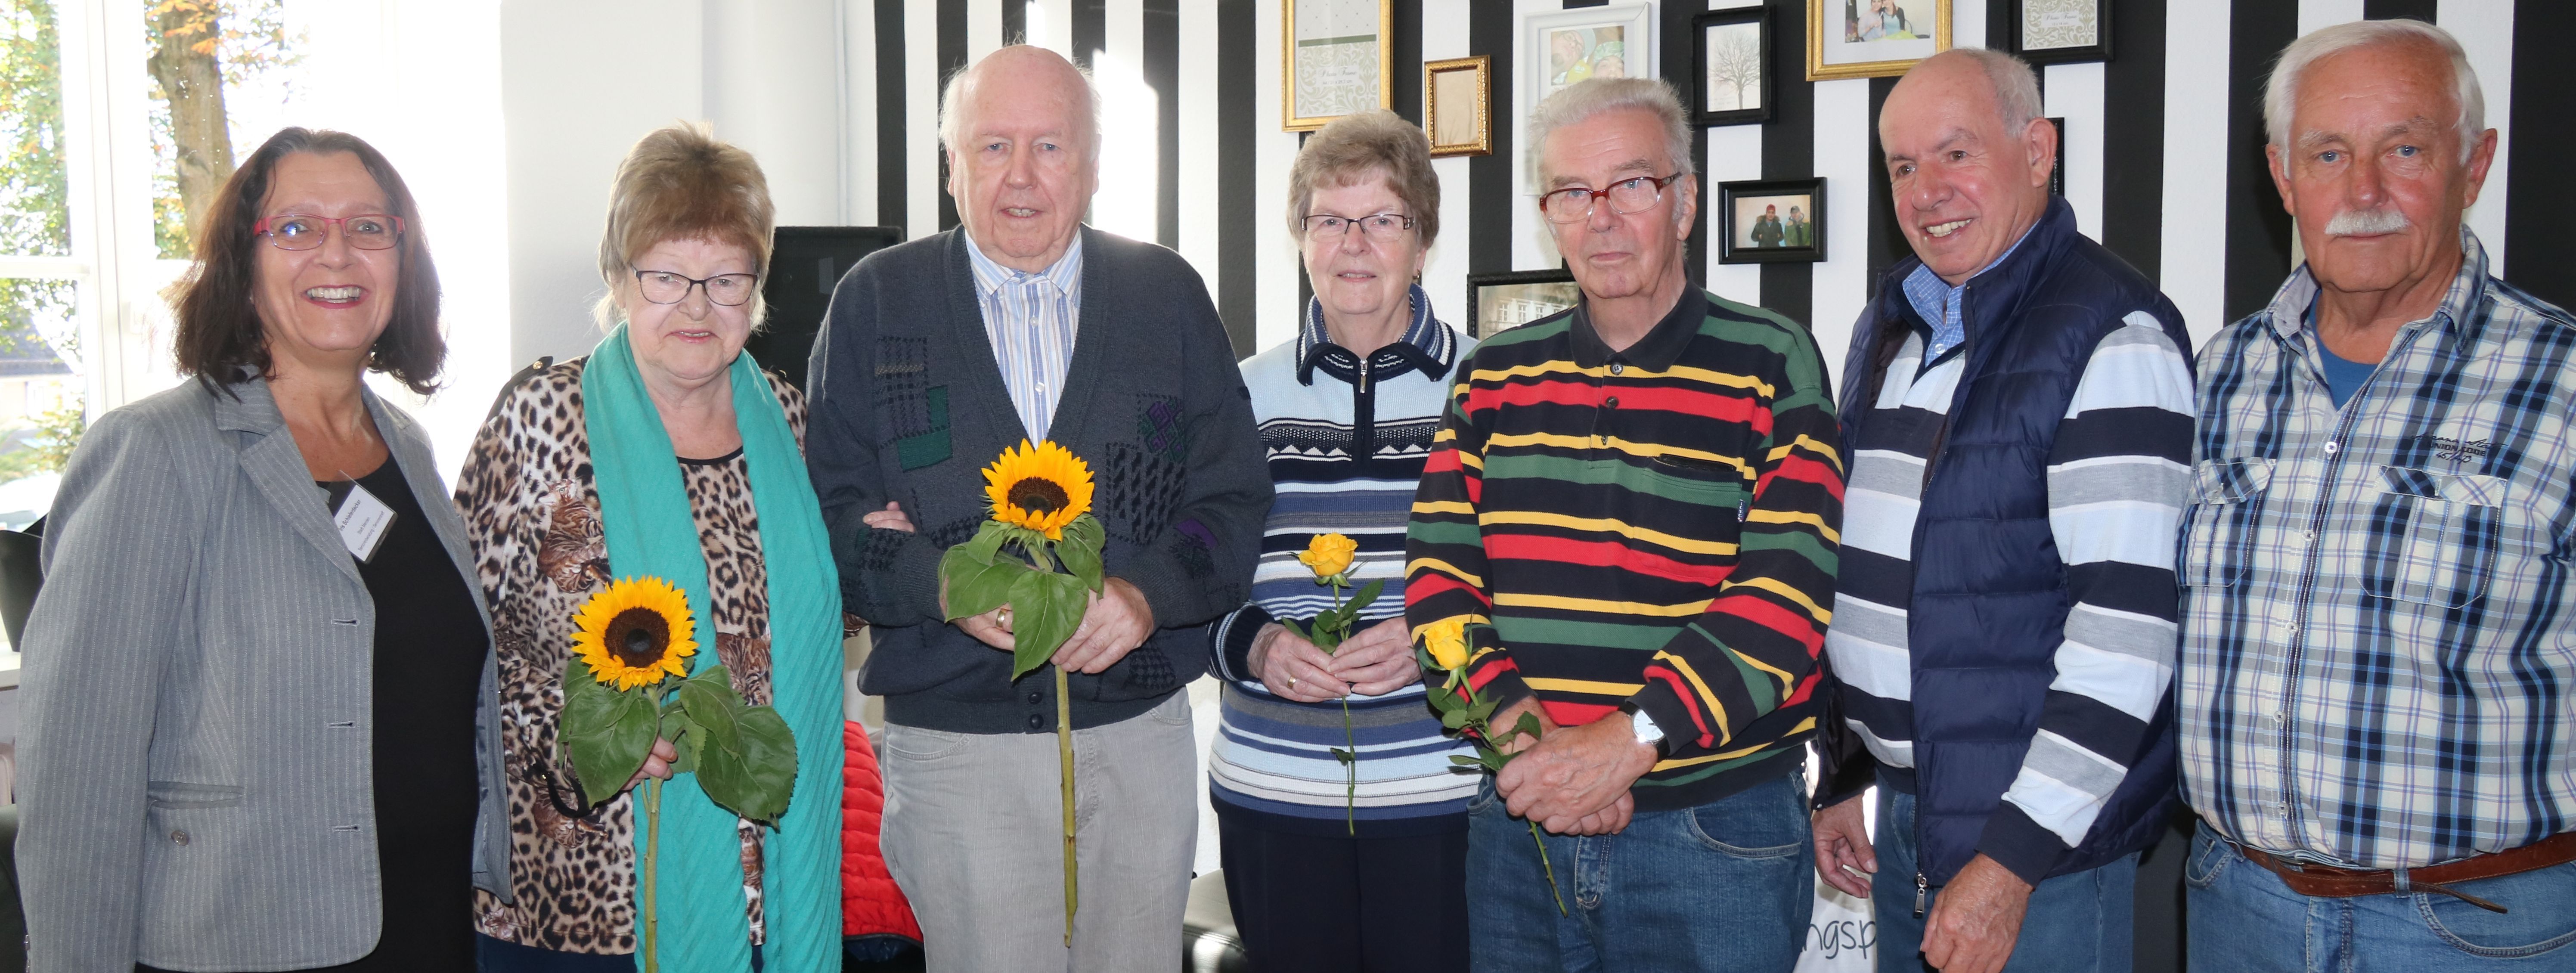 Die ehrenamtlichen Mitgleider von "Senioren Online" stehen im Halbkreis, gemeinsam mit Iris Schieferdecker vom Seniorentreff der Stadt. Die Teilnehmer halten Blumen in den Händen, die sie zum Dank erhalten haben.